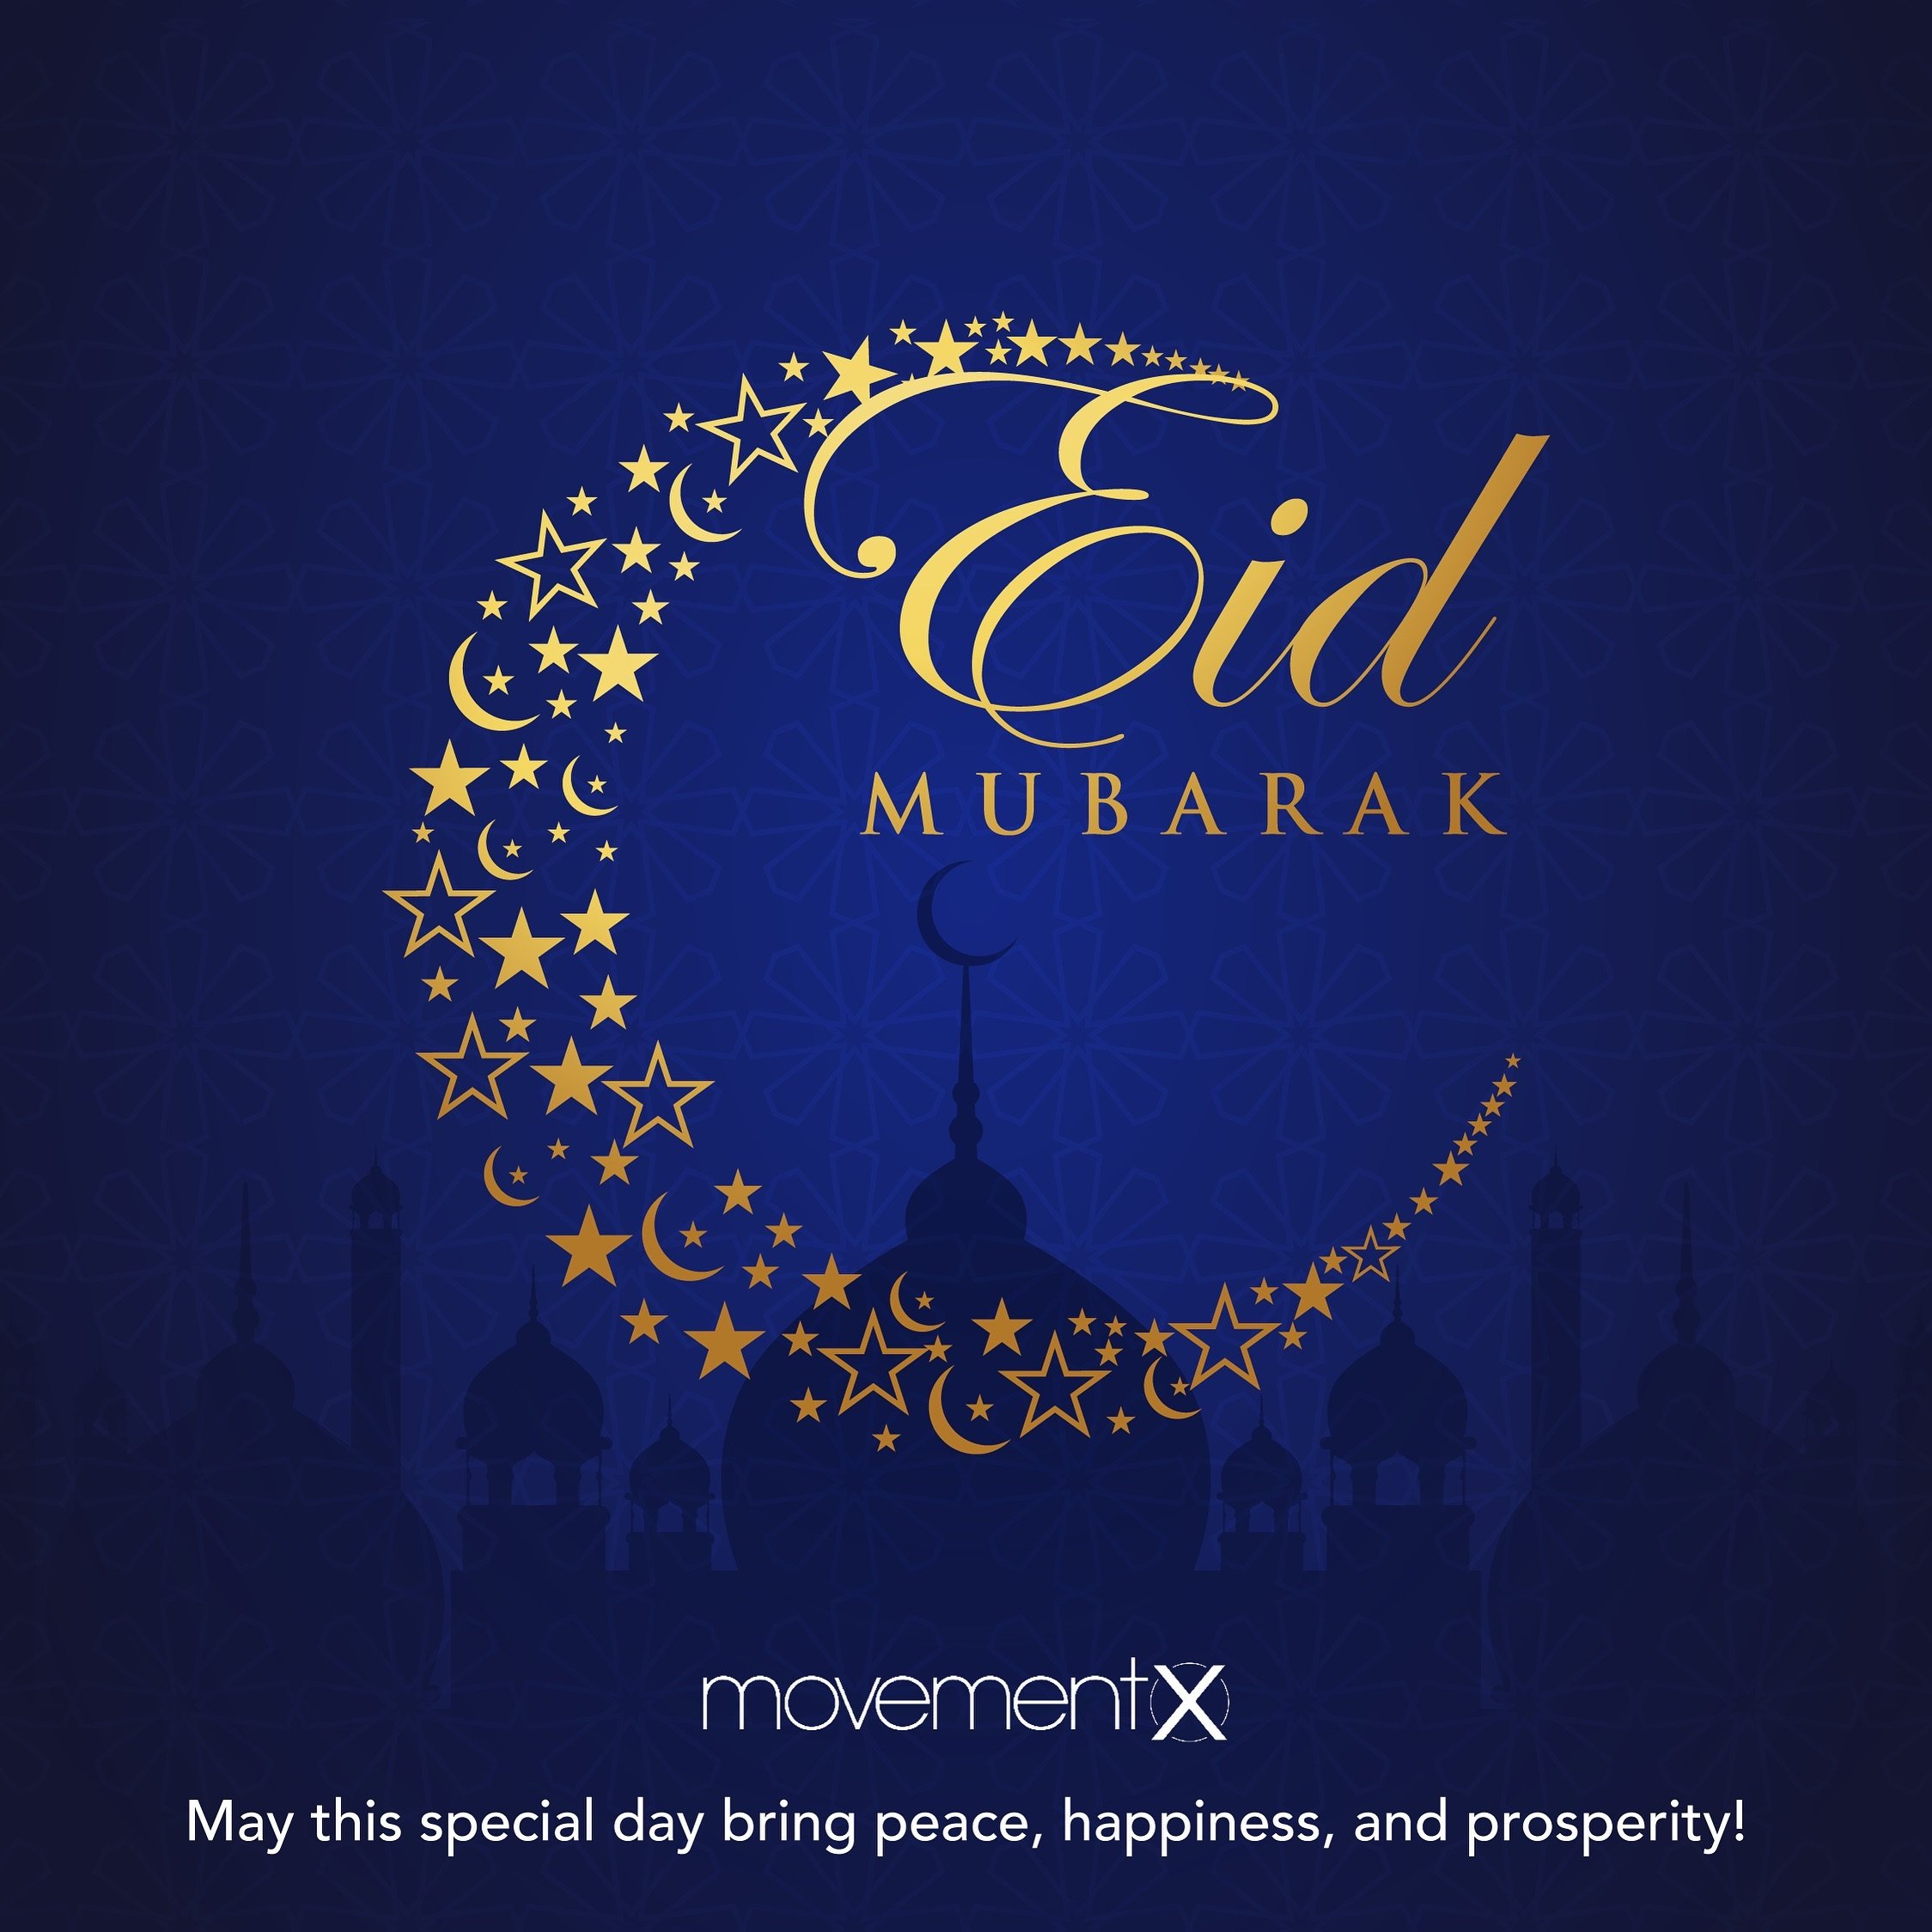 MovementX wishes you a joyous Eid surrounded by family and friends. Eid Mubarak! ✨

#eidmubarak #eidcelebrations #family